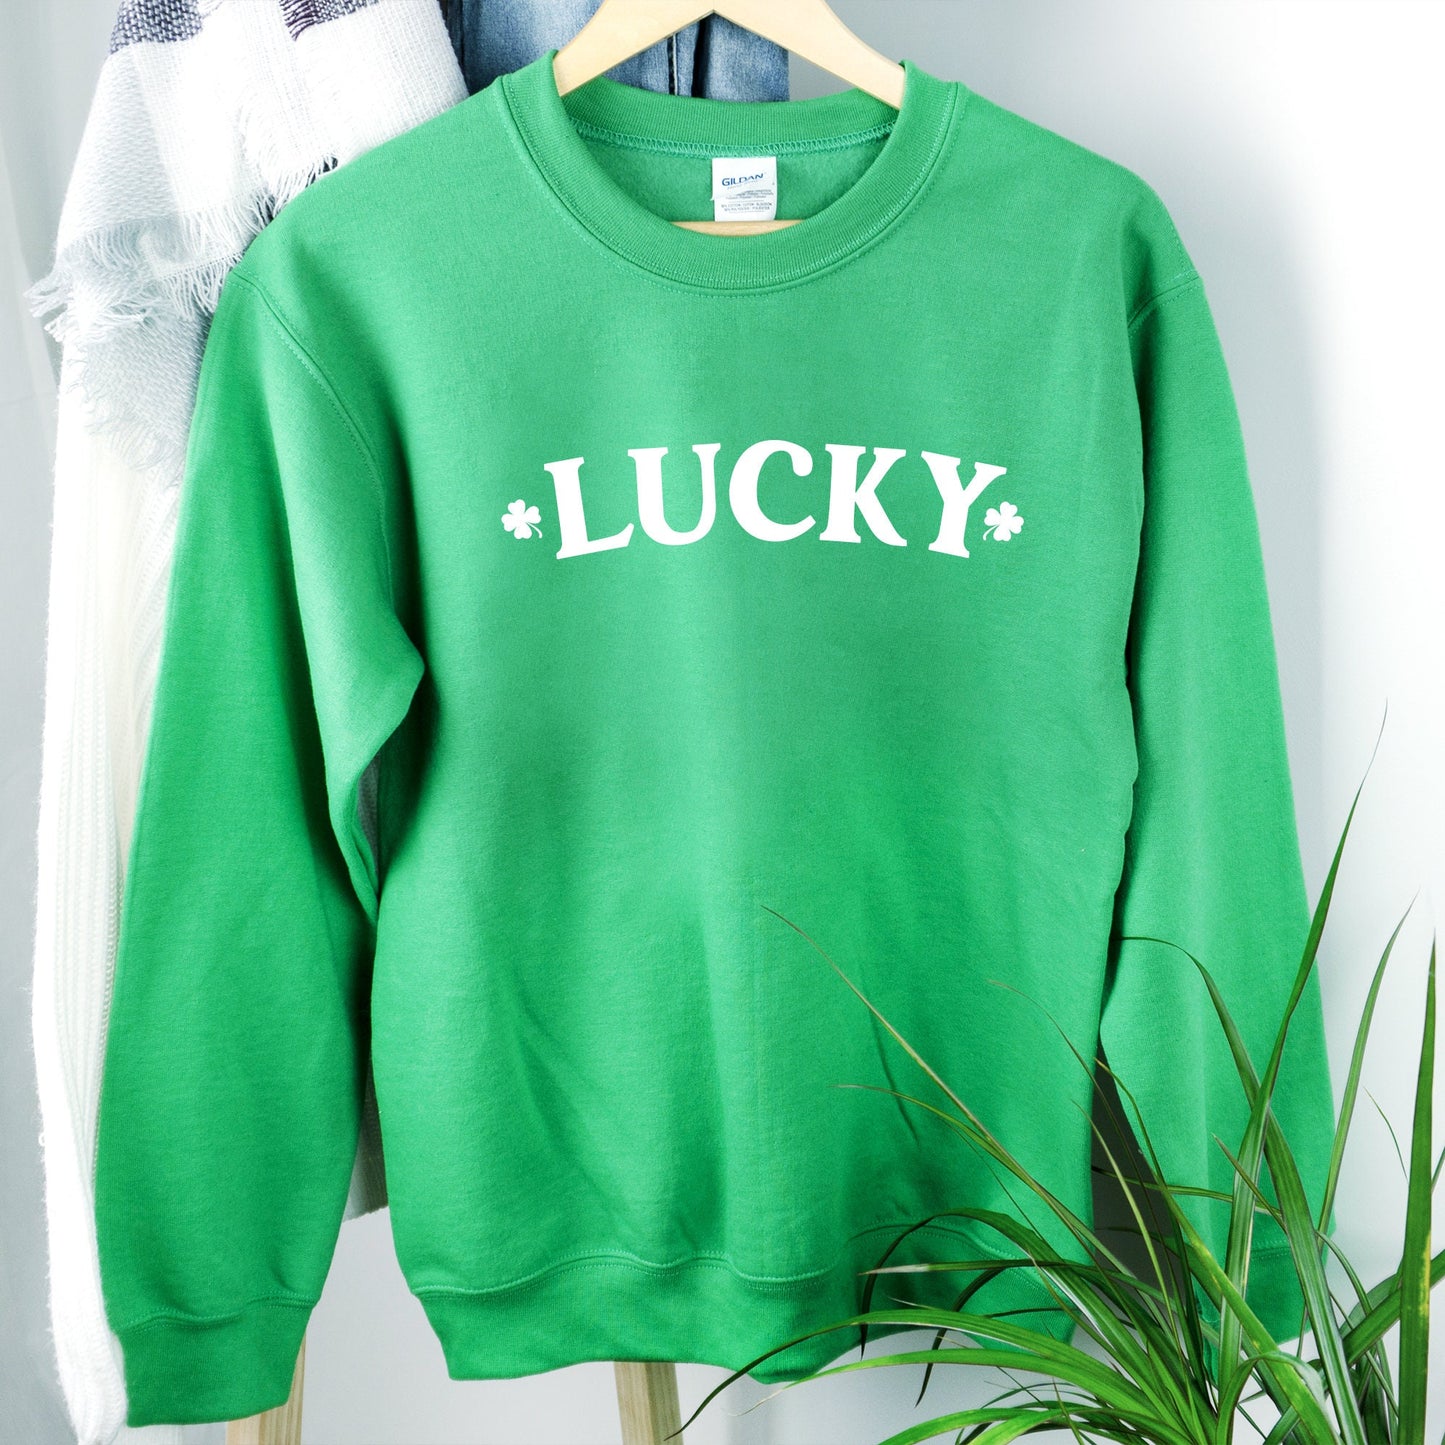 Lucky St. Patricks Day Shirt - Women's Saint Paddy's Day Outfit - Saint Patricks Day Wear - Shamrock Outfit